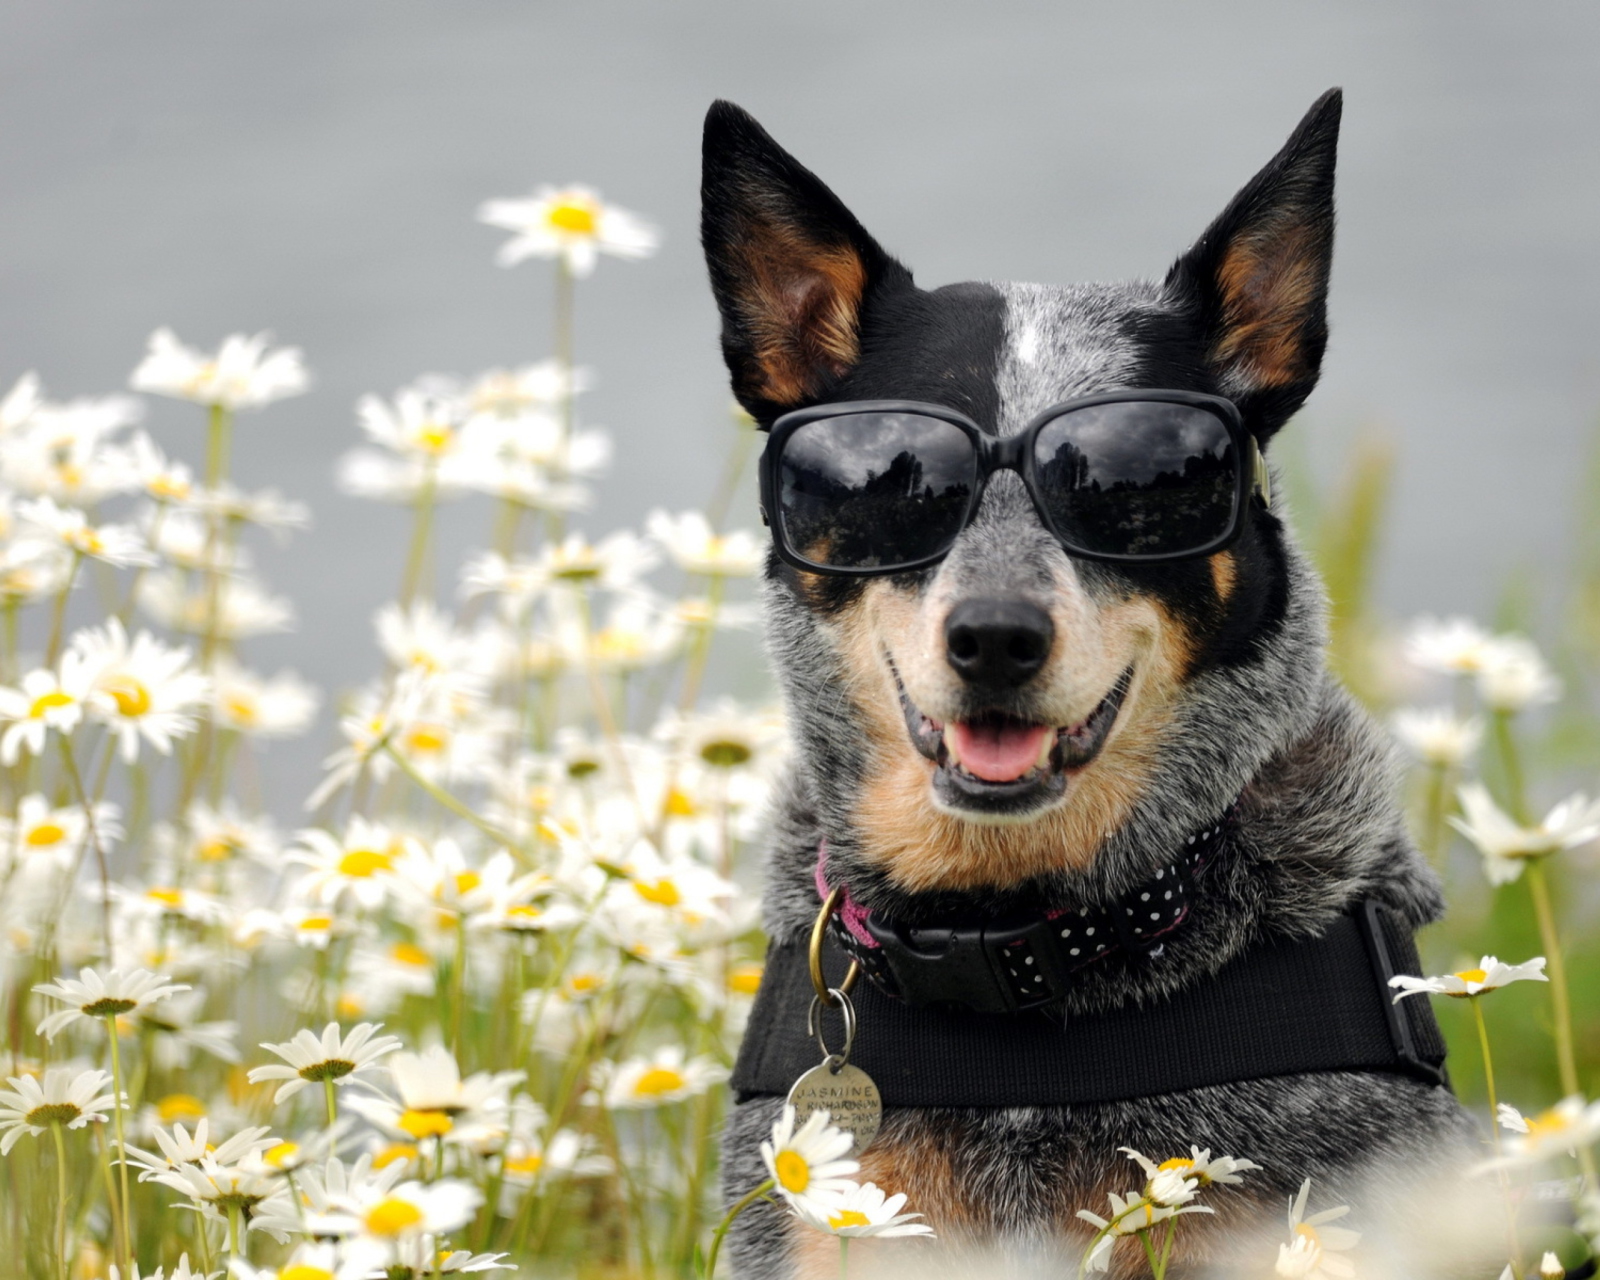 Обои Dog, Sunglasses And Daisies 1600x1280